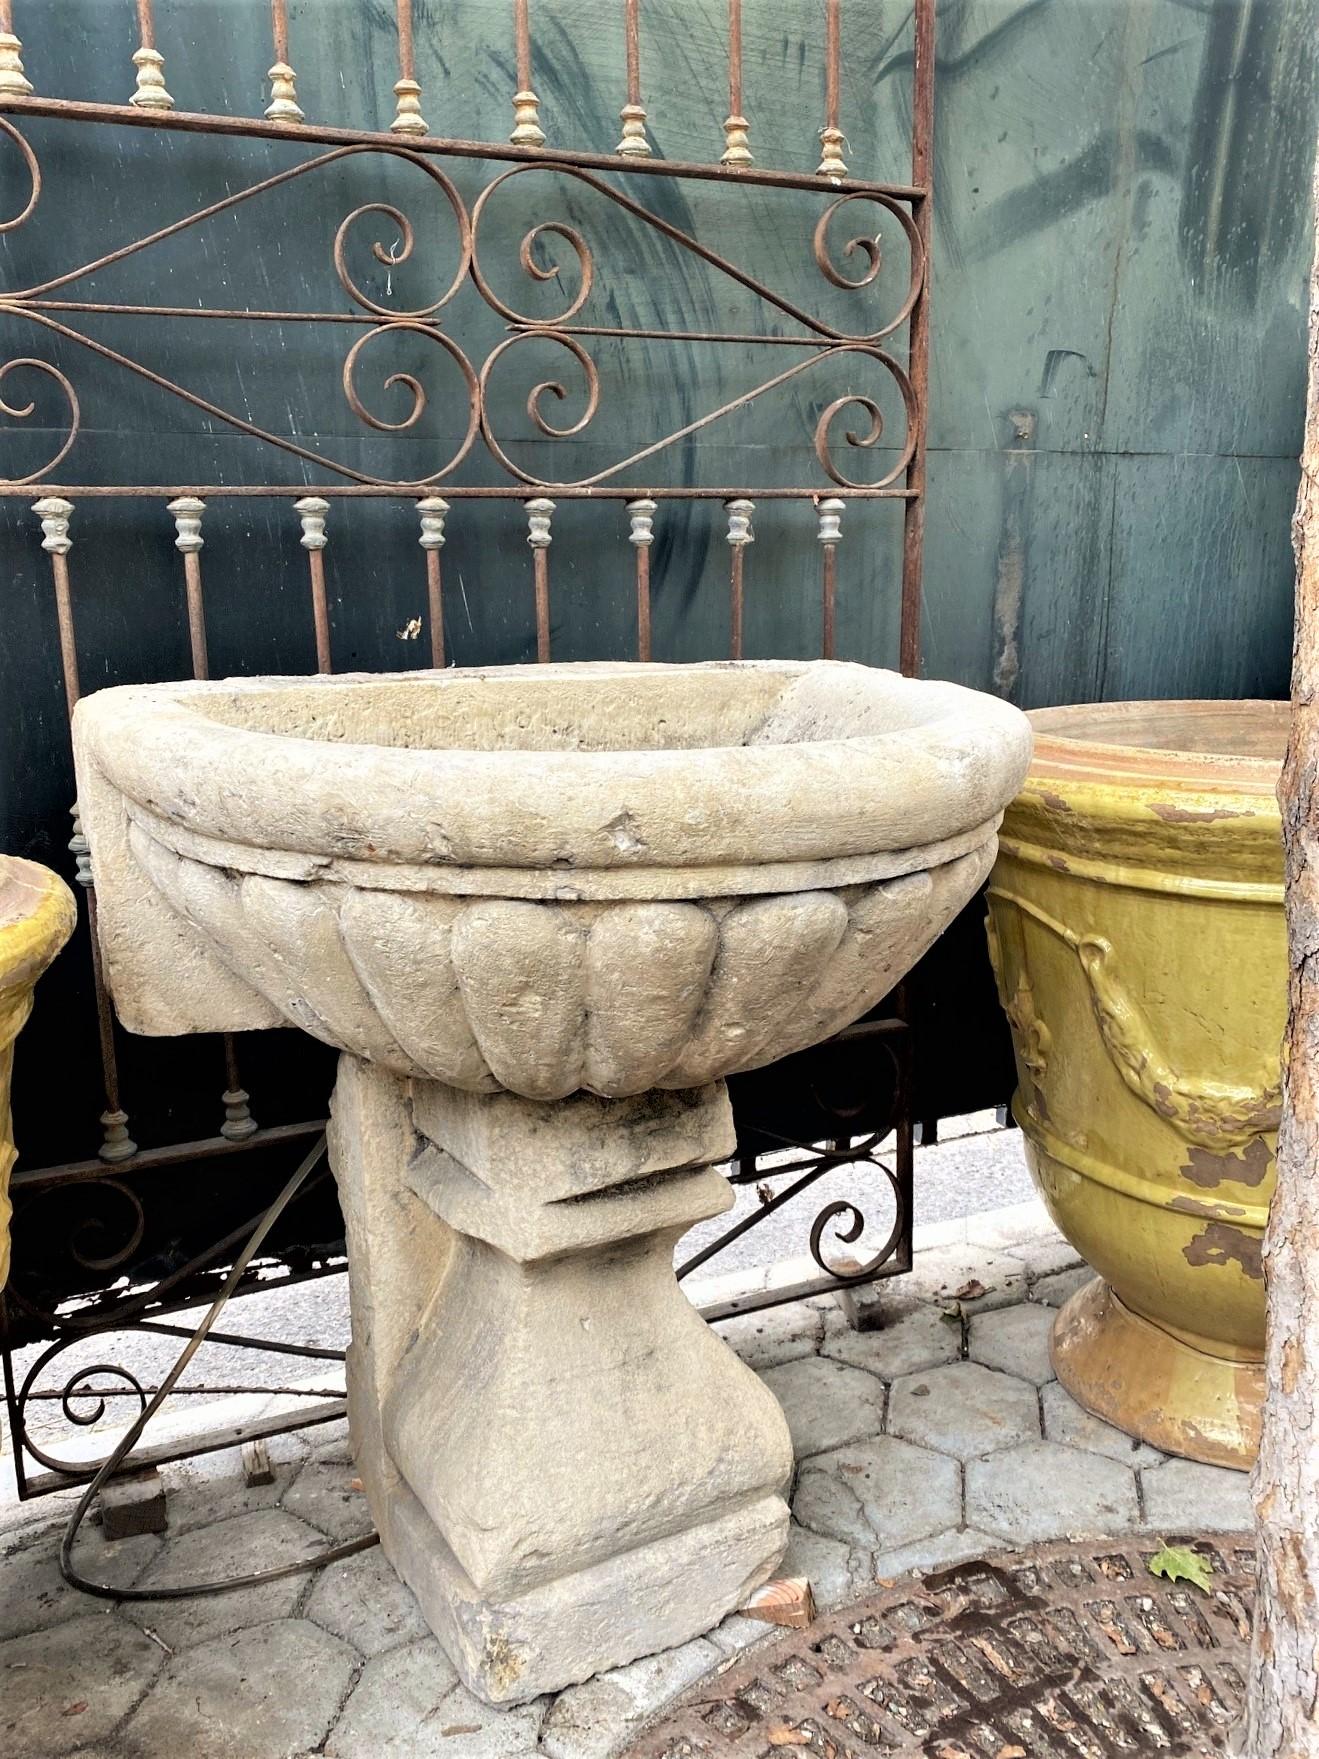 Große Hand Carved Stone Sink Basin Wall Fountain Bowl & Sockel Basis Antique CA . Eine schöne 18. Jahrhundert Hand Carved Stone Sink / Wandmontage Brunnen Becken. vielseitig skulpturale architektonische Element für einen Outdoor-Garten oder